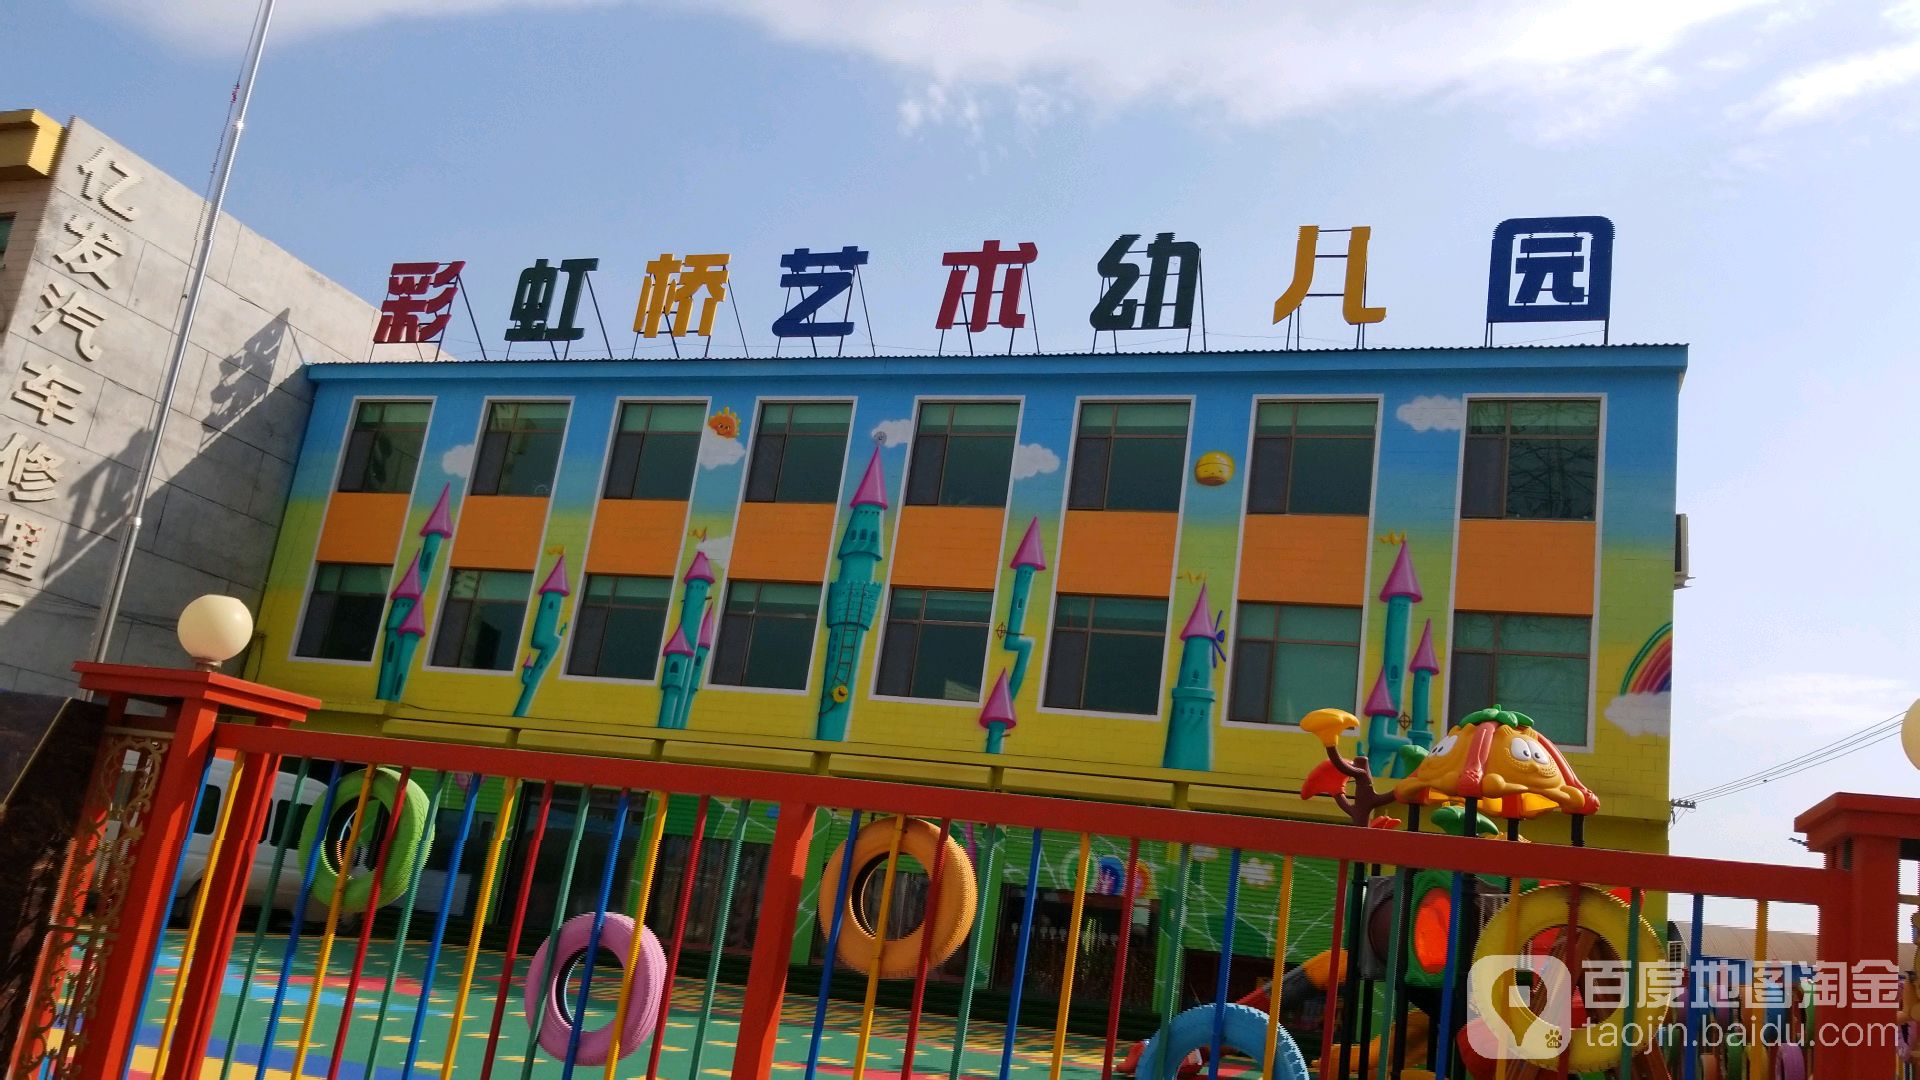 彩虹桥艺术幼儿园的图片